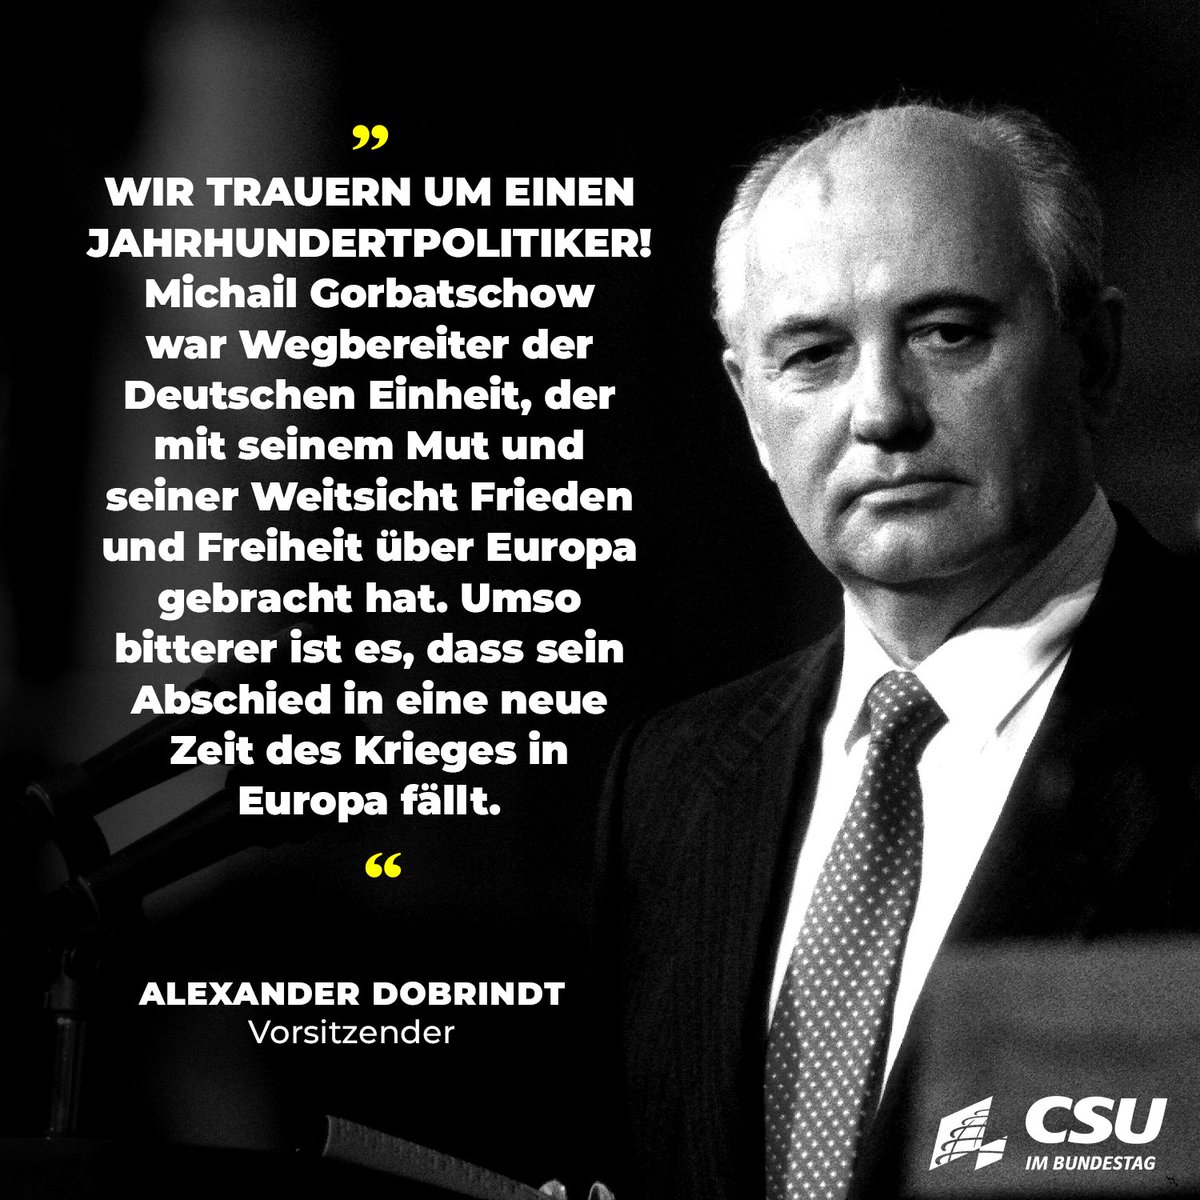 Wir trauern um einen Jahrhundertpolitiker! Michail #Gorbatschow war Wegbereiter der Deutschen Einheit, der mit seinem Mut und seiner Weitsicht Frieden und Freiheit über Europa gebracht hat. Umso bitterer ist es, dass sein Abschied in eine neue Zeit des Krieges in Europa fällt.